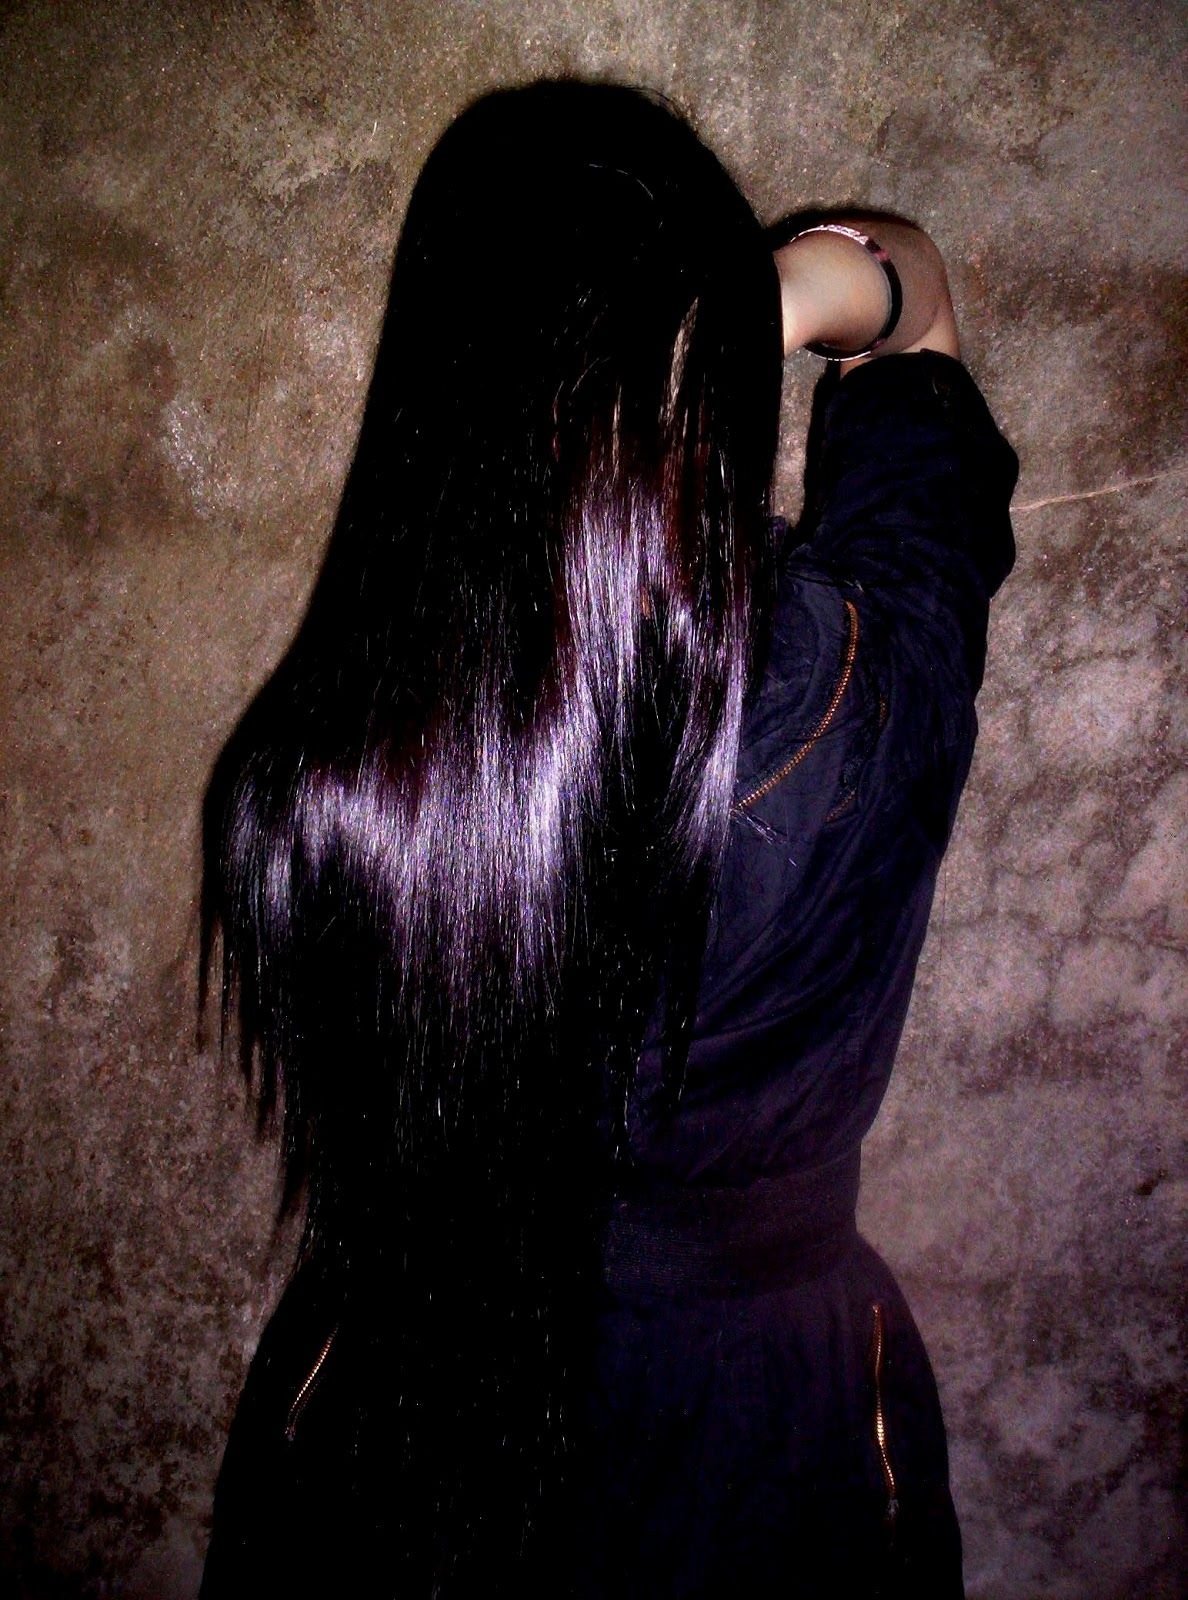 Черные волосы сила. Черные волосы с фиолетовым отливом. Чёрный цвет волос с фиолетовым отливом. Девушка с длинными черными волосами. Фиолетовый оттенок на темных волосах.